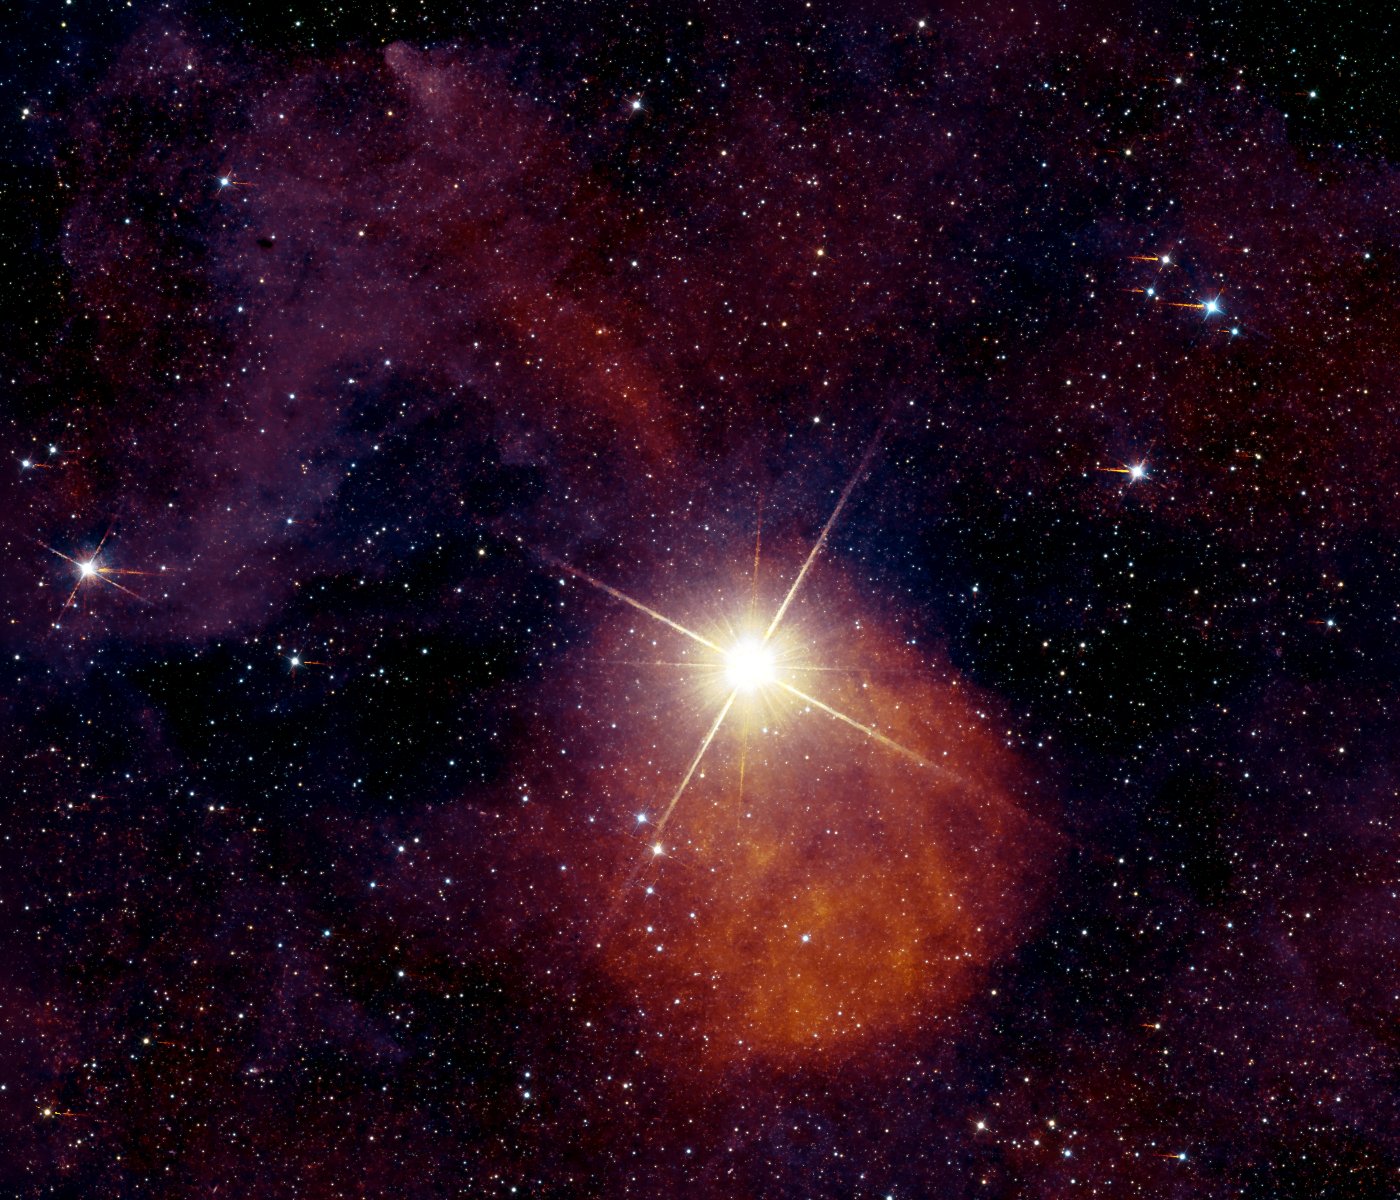 Emission nebula in direction of Tarazed